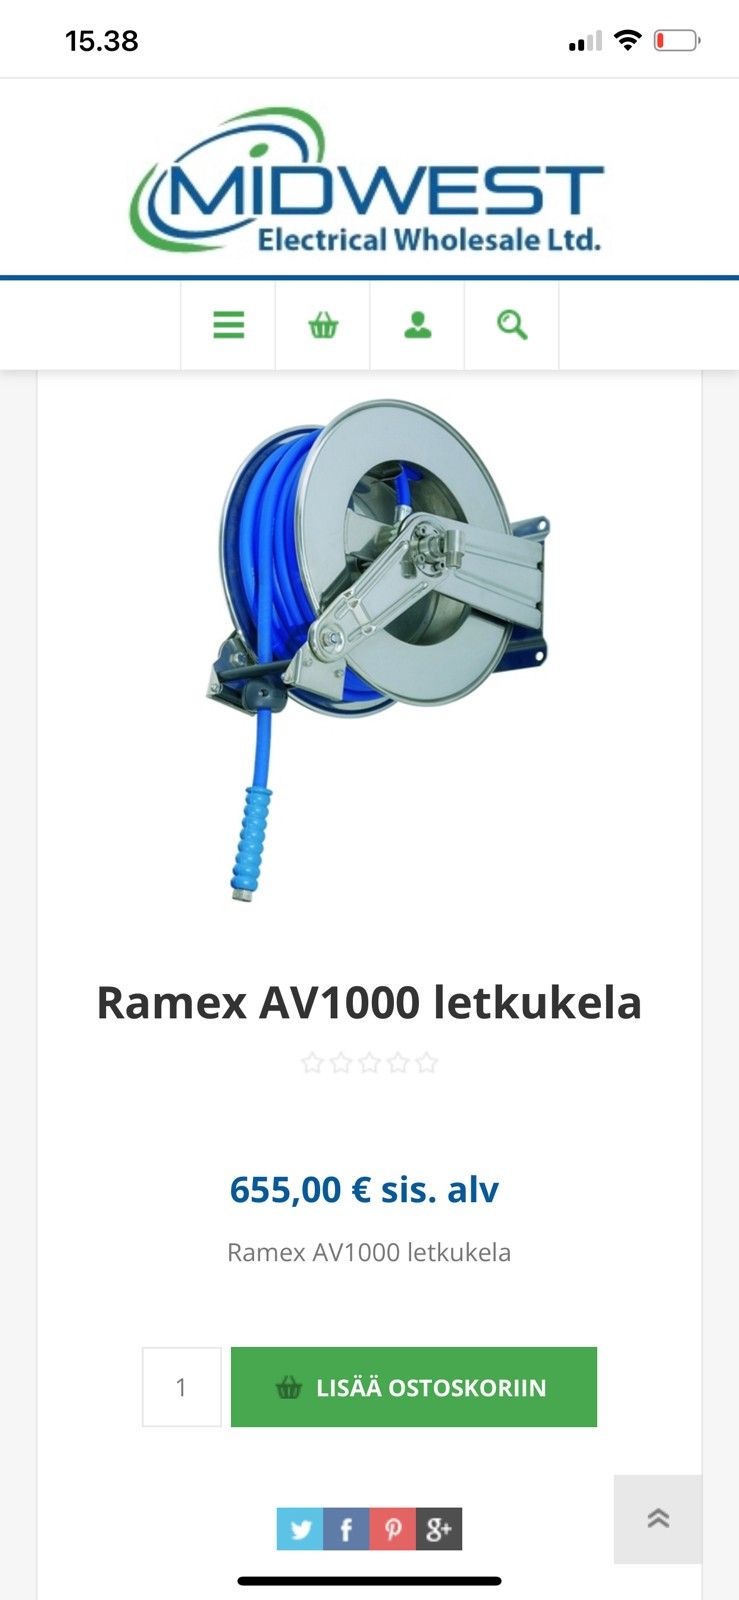 Ramex AV1000 letkukela